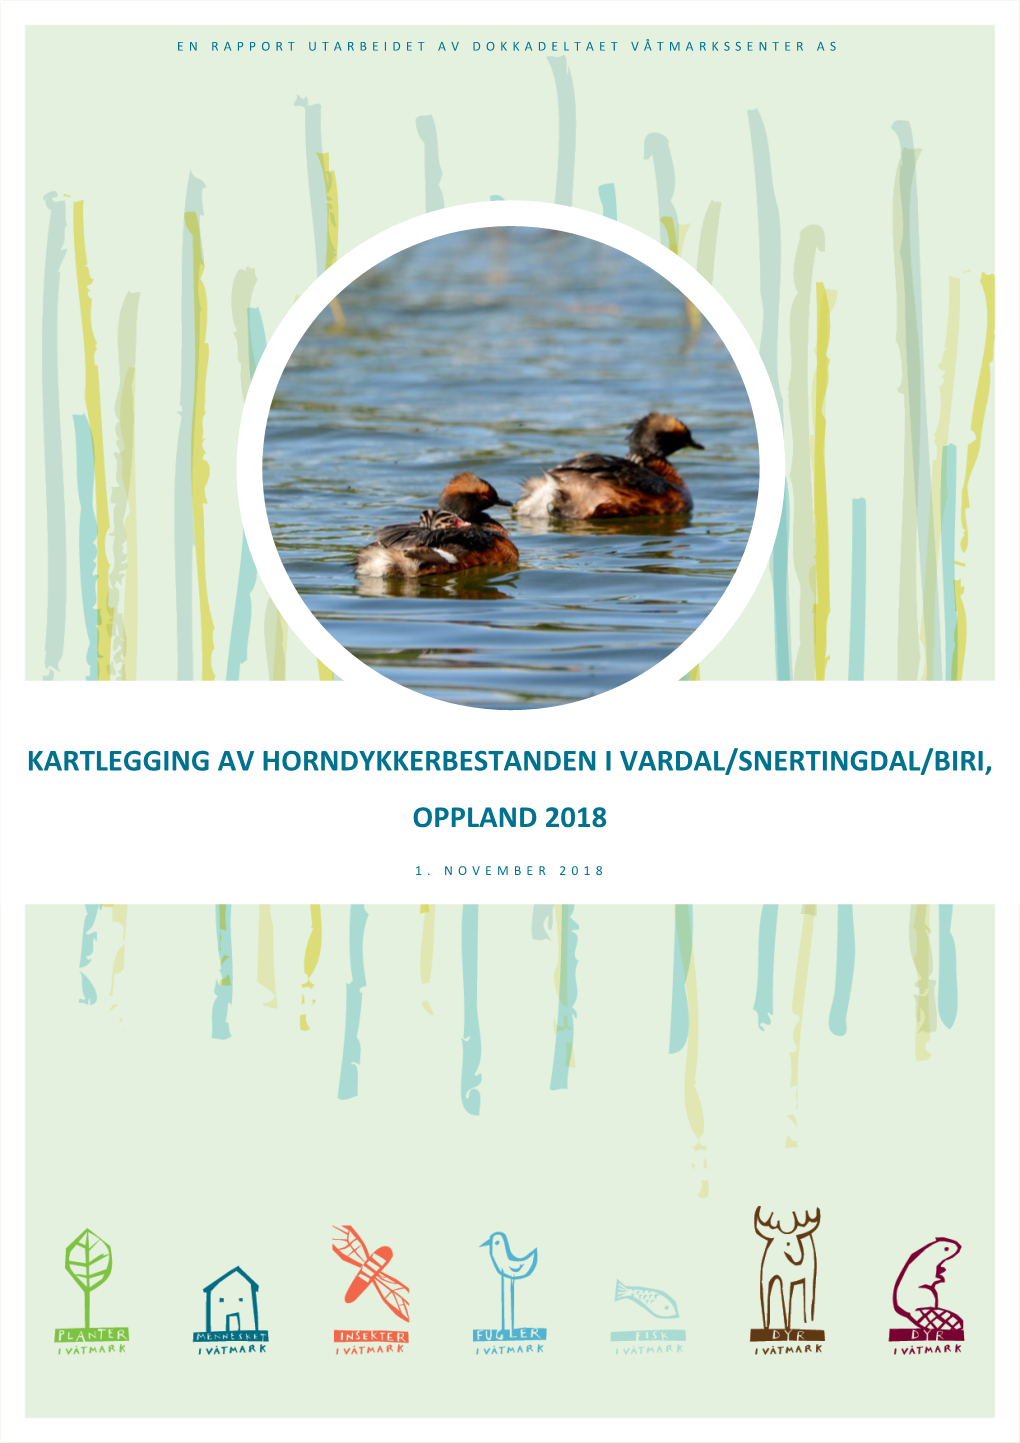 Kartlegging Av Horndykkerbestanden I Vardal/Snertingdal/Biri, Oppland 2018